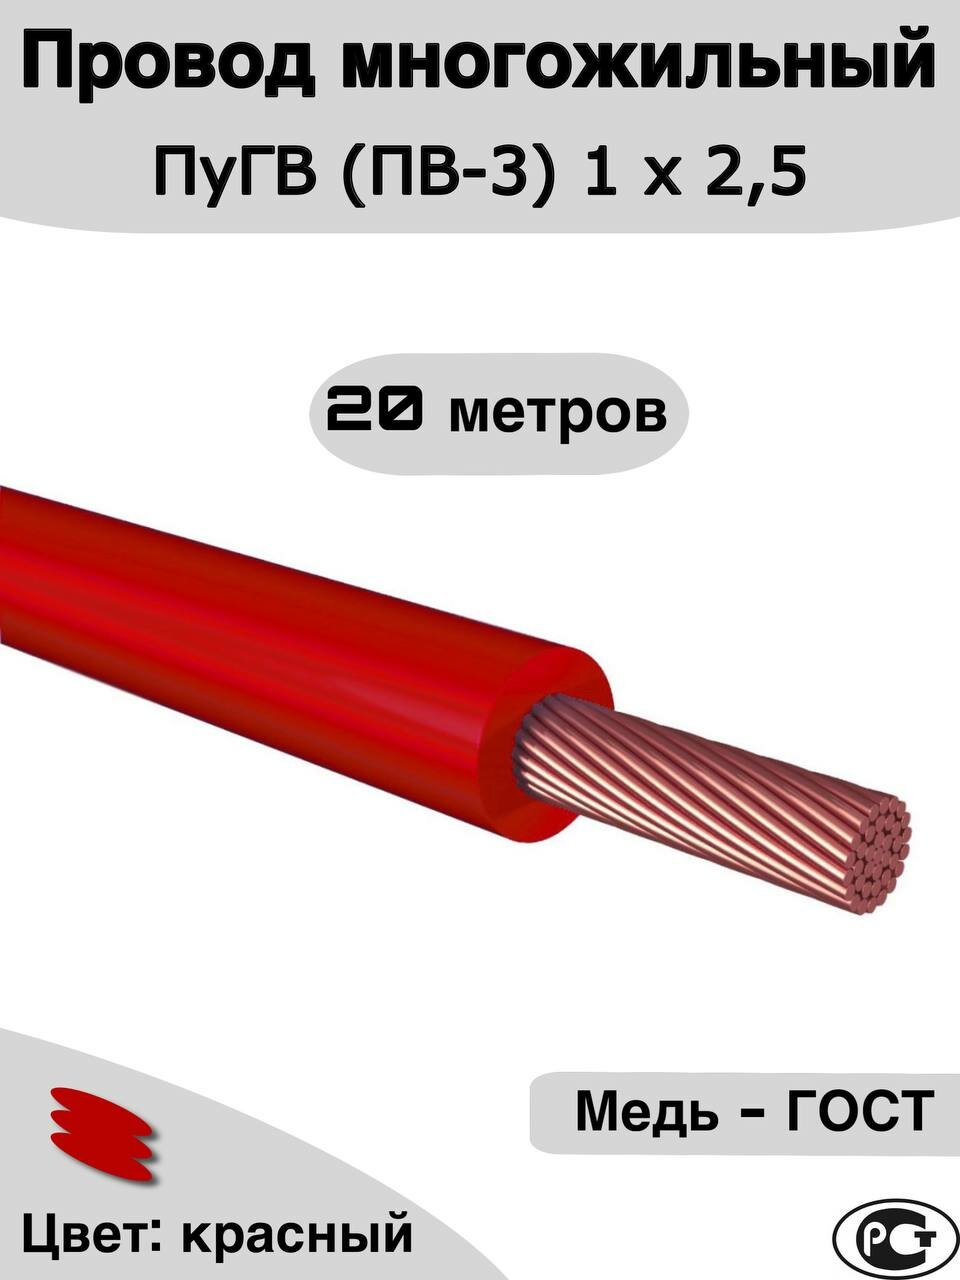 Провод многожильный ПуГВ (ПВ-3) красный 1 х 2,5 ГОСТ. 20м.